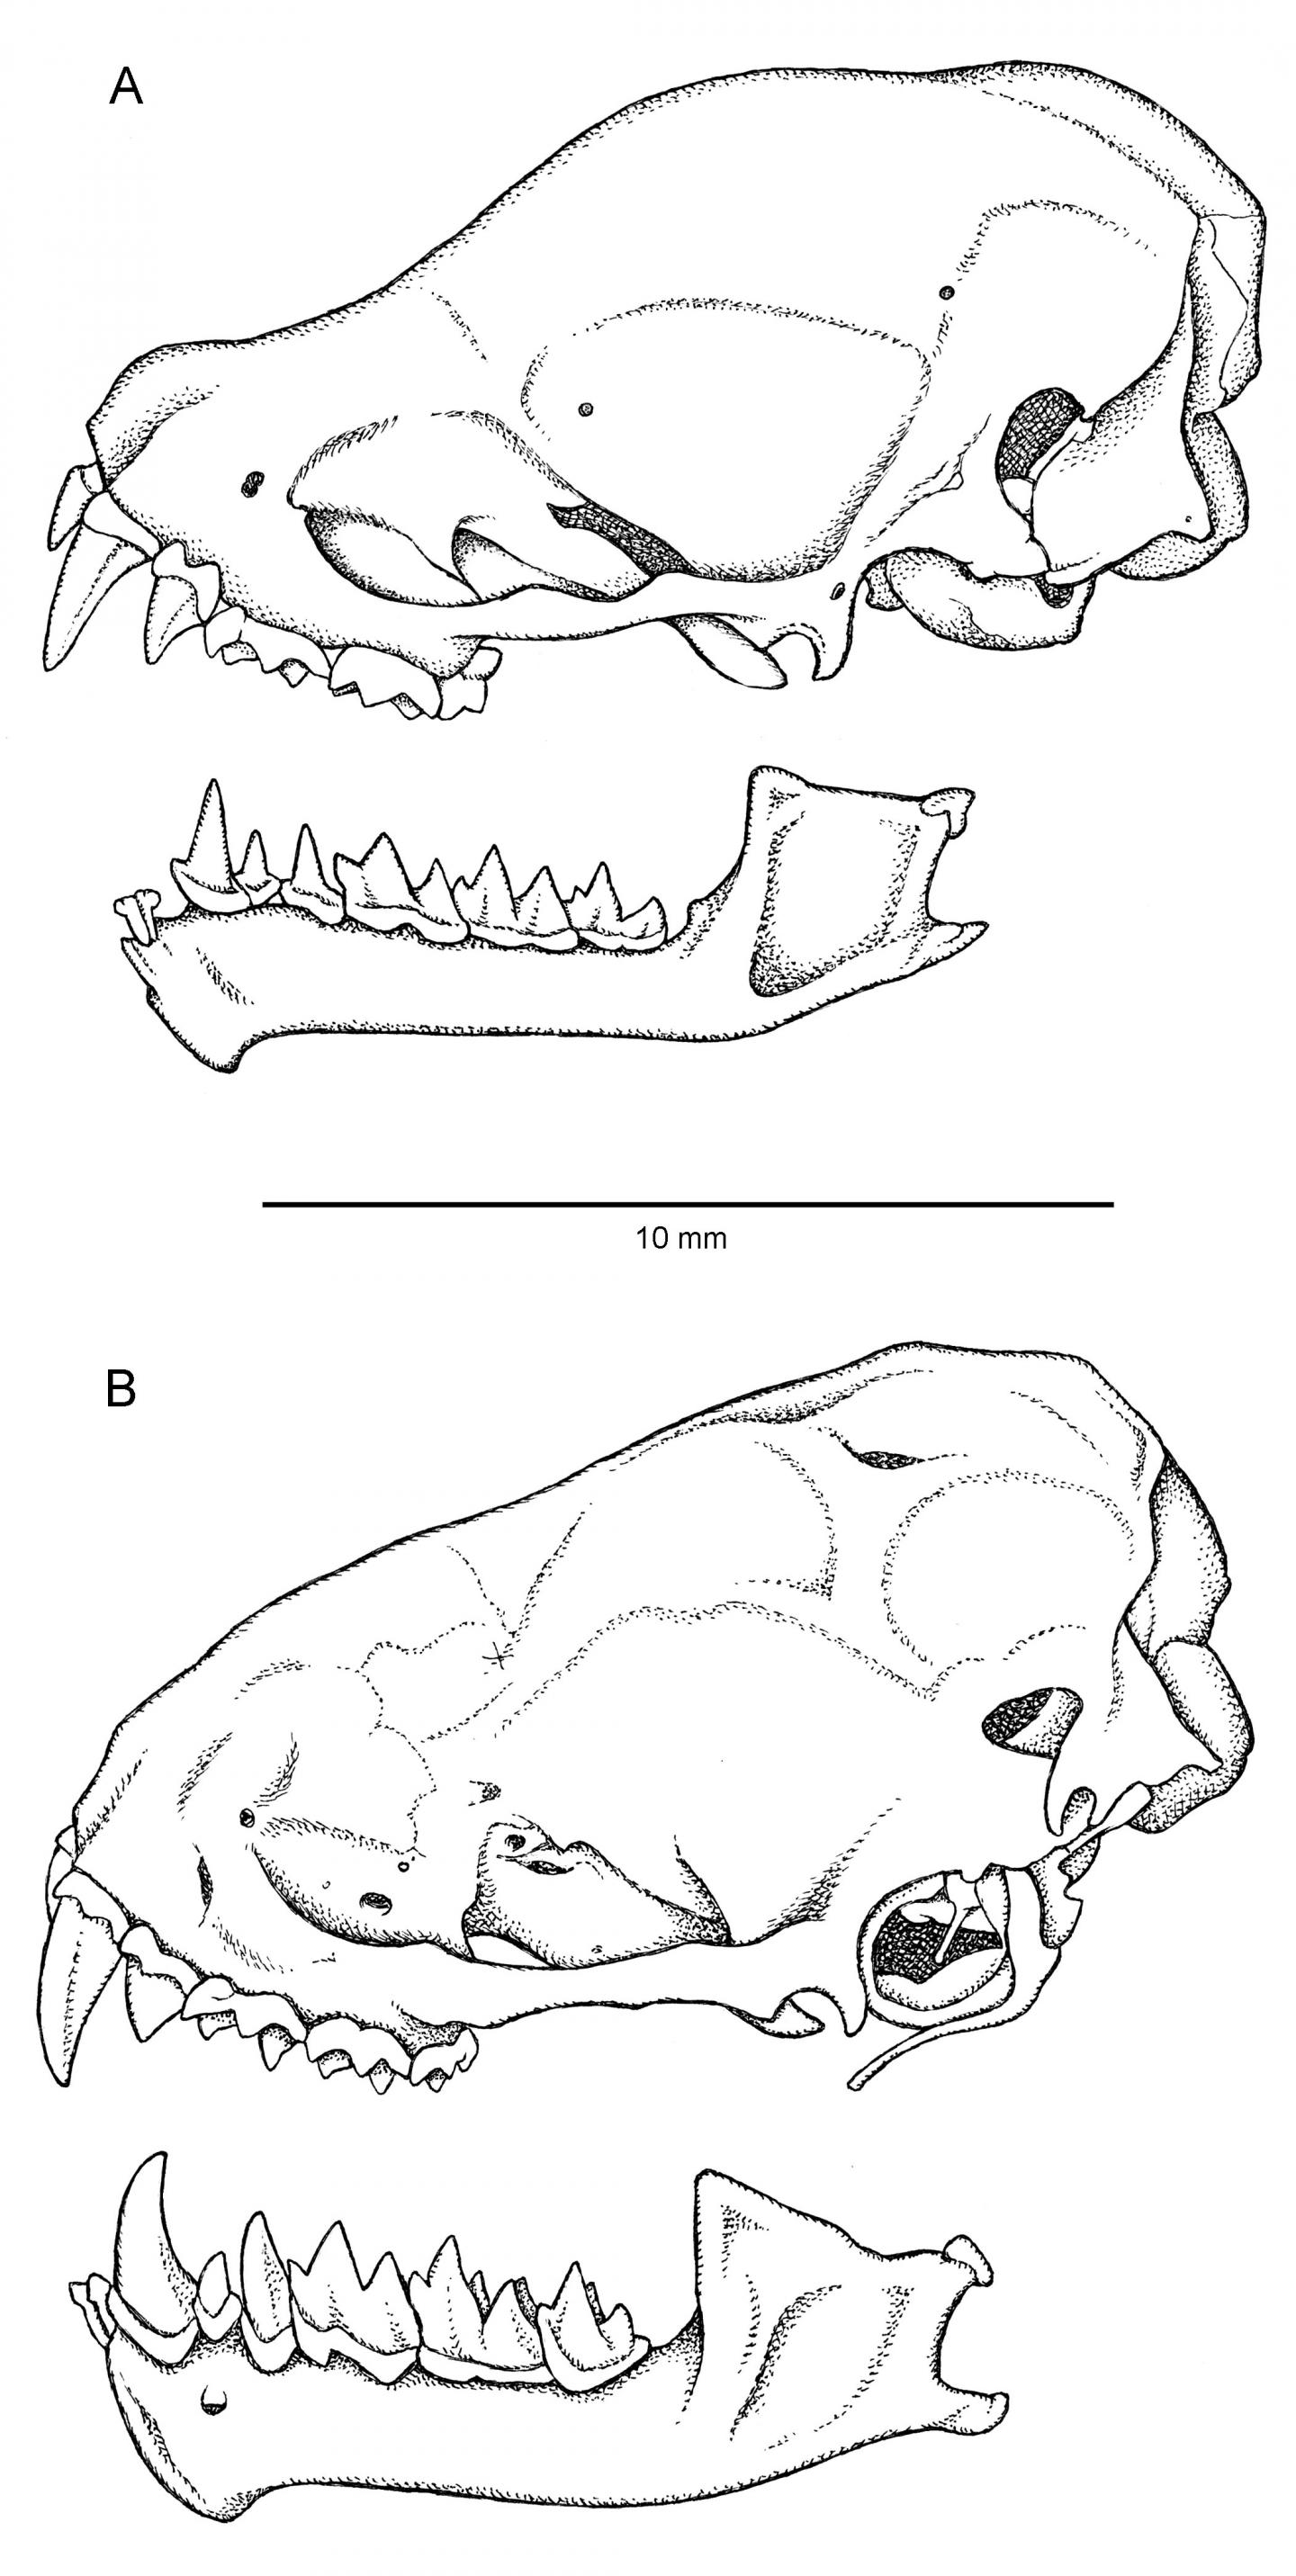 Skull Comparison